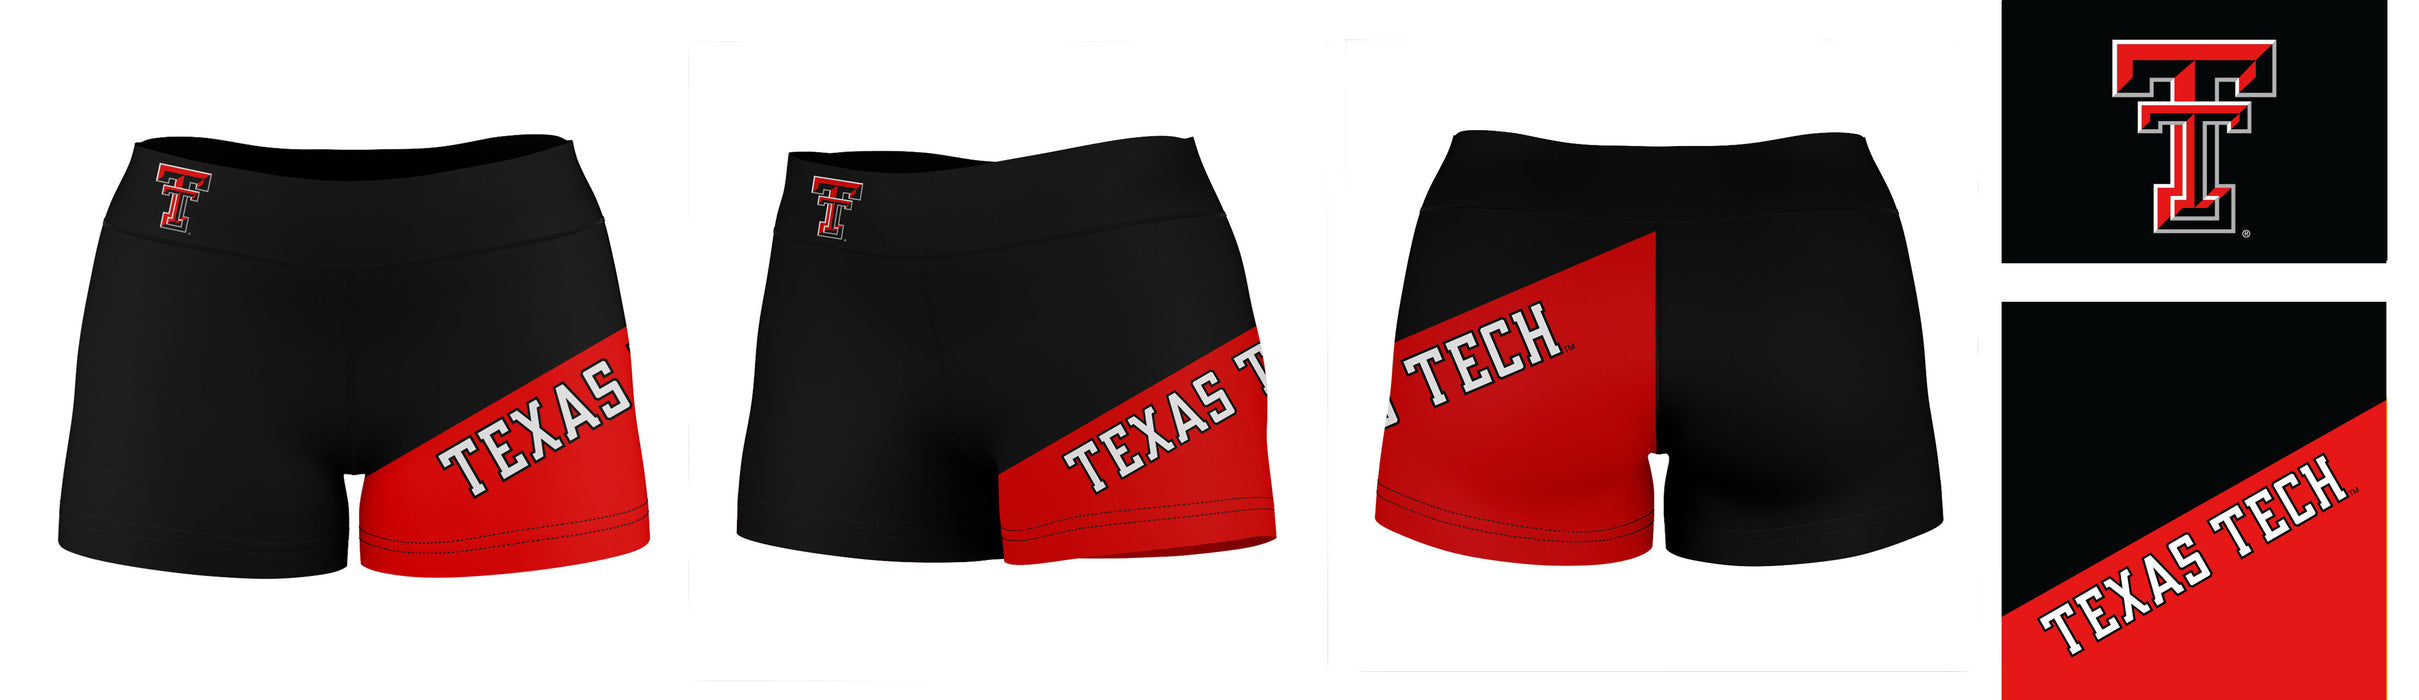 Texas Tech Red Raiders Vive La Fete Game Day Collegiate Leg Color Block Women Black Red Optimum Yoga Short - Vive La Fête - Online Apparel Store